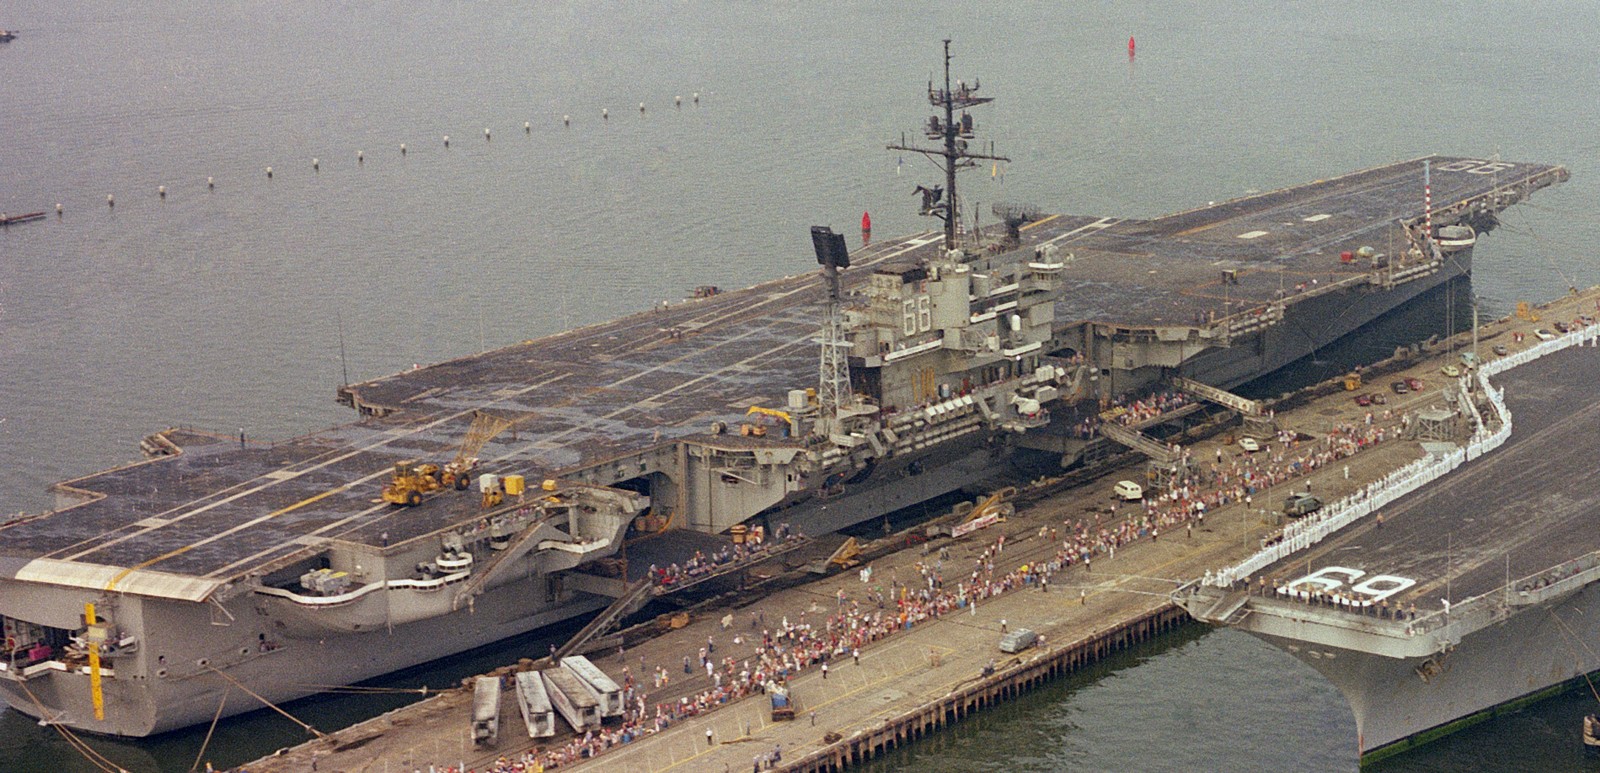 cv-66 uss america kitty hawk class aircraft carrier us navy 85